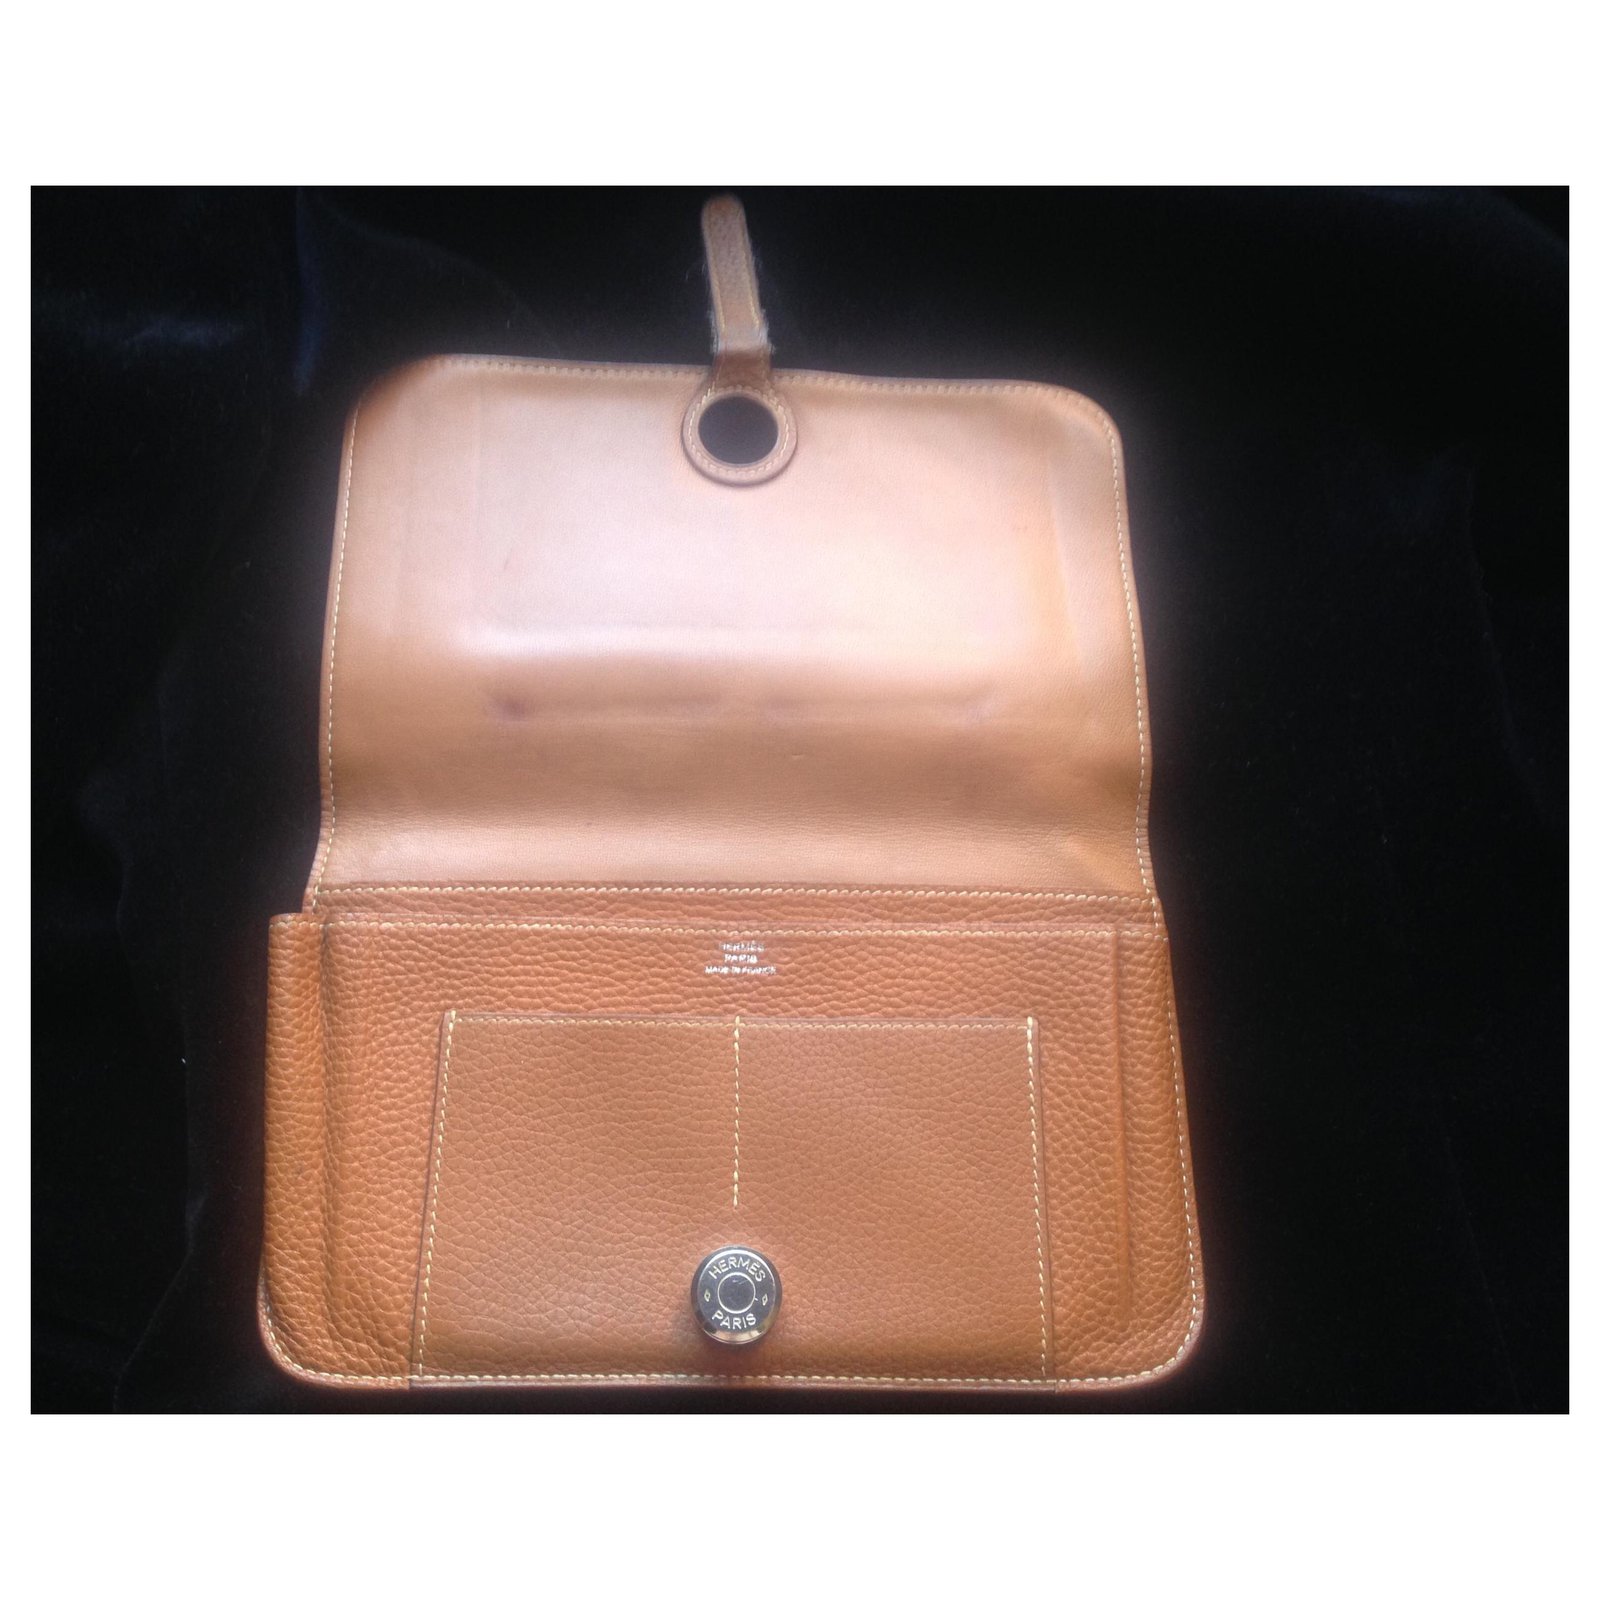 Hermes Dogon Waist Bag Leather Brown 2171555